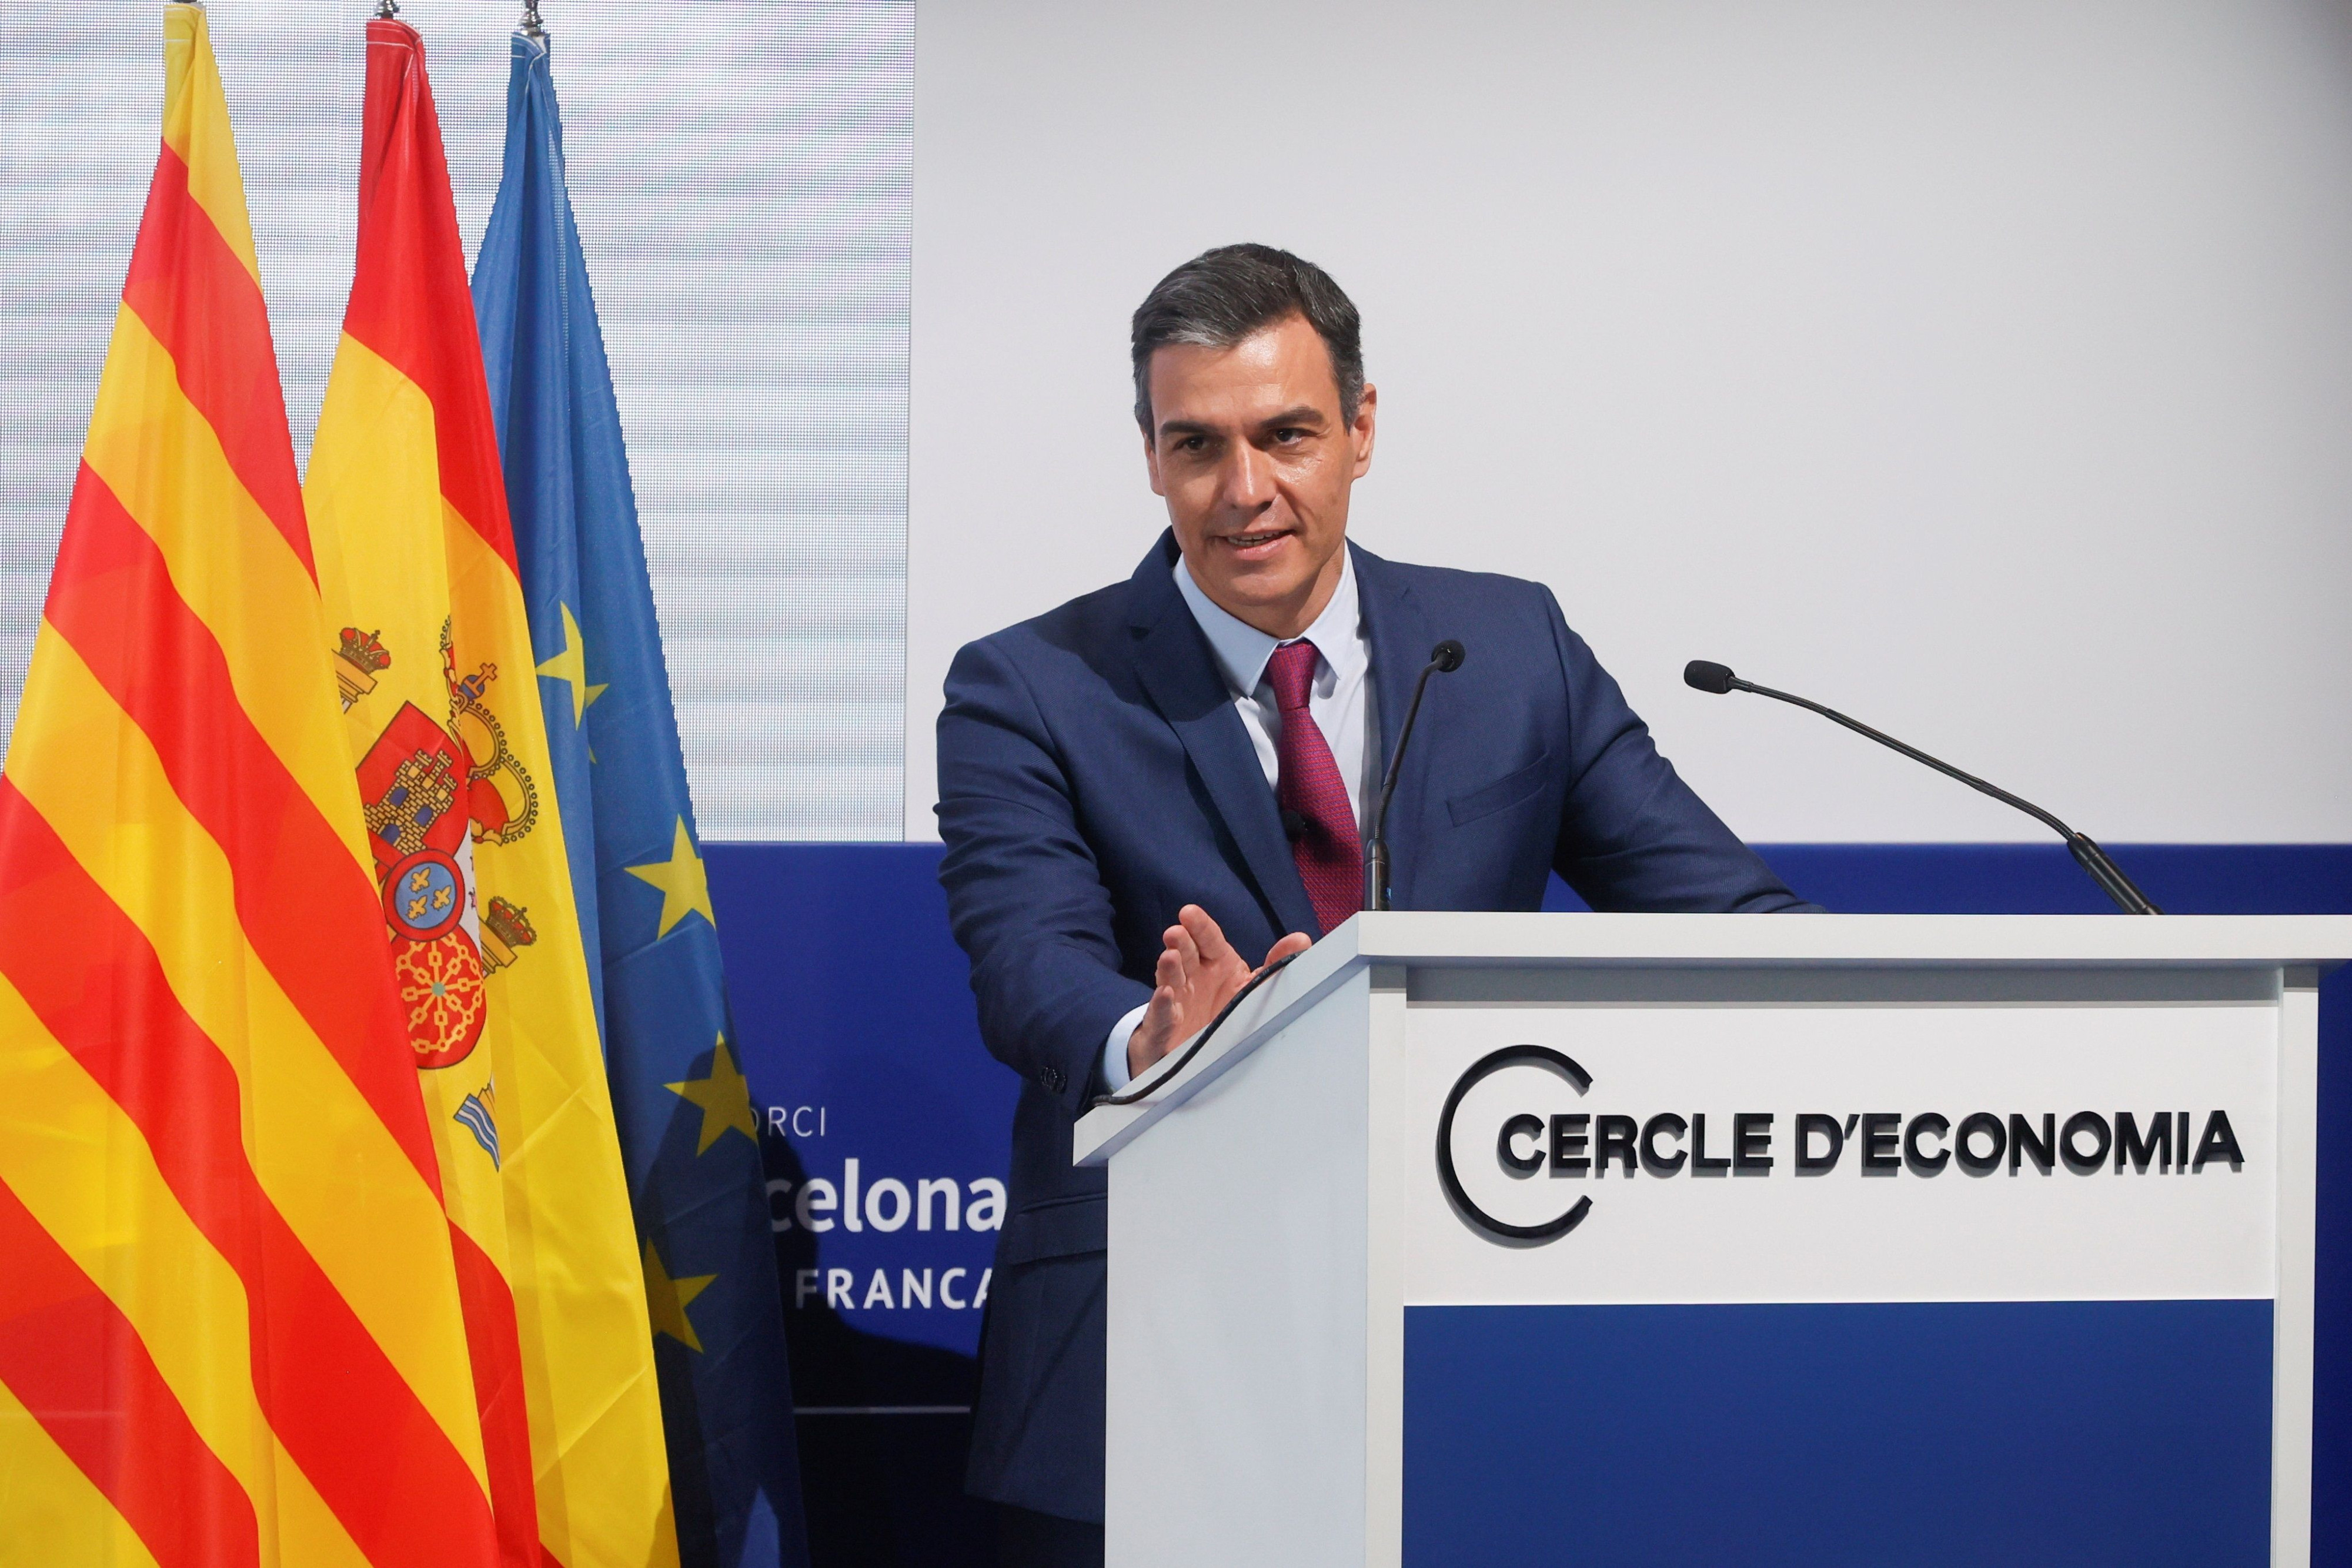 El presidente del Gobierno, Pedro Sánchez, al inicio de su intervención en la clausura del Cercle d'Economia / EFE - QUIQUE GARCÍA 